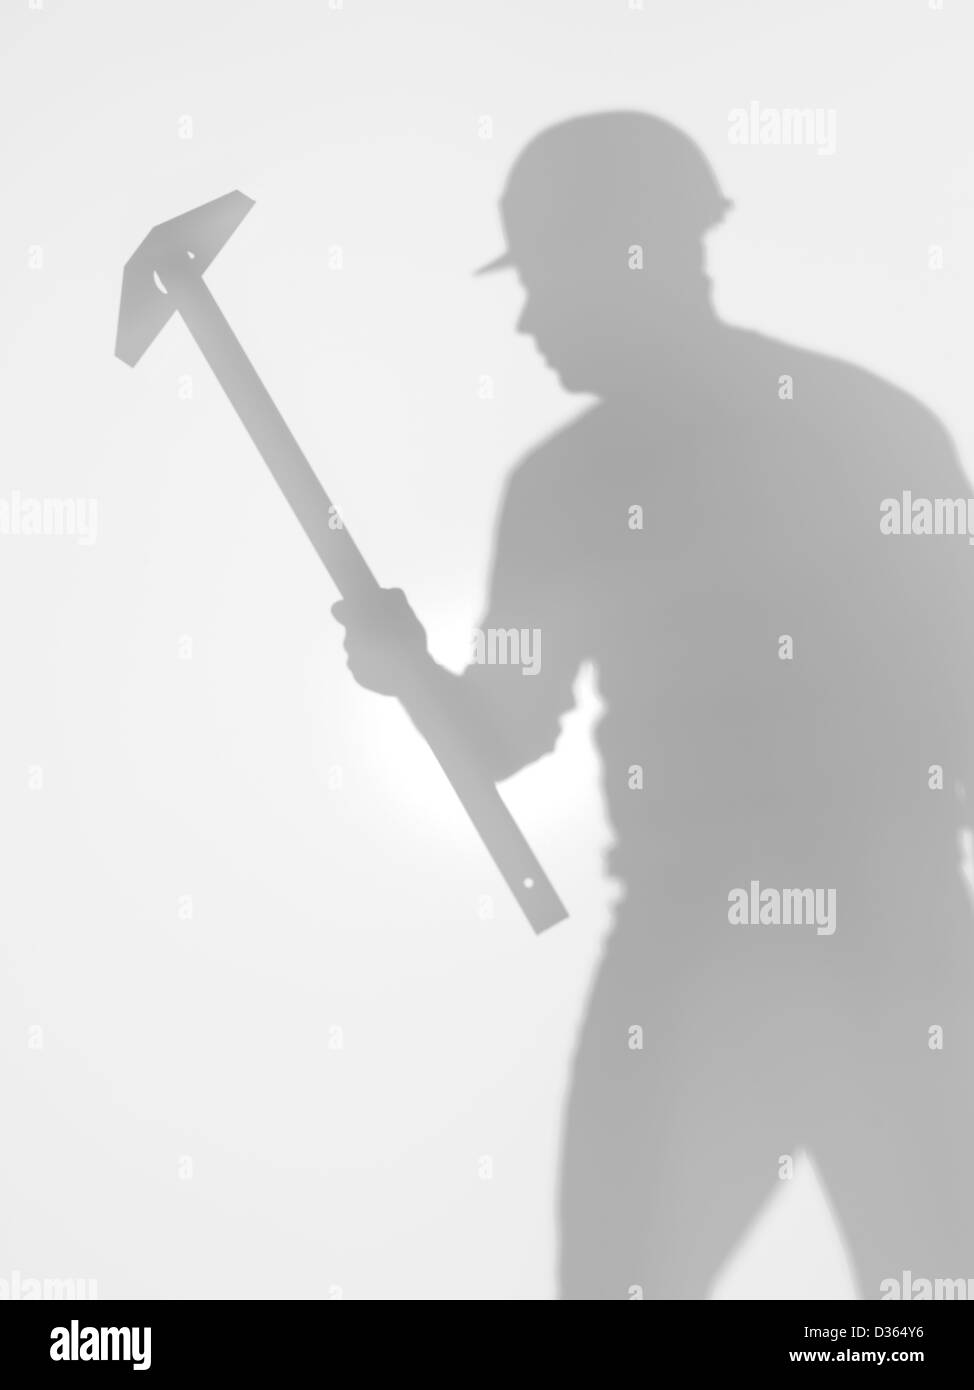 Un uomo lavoratore edile con hardhat e un t square dominatore nelle sue mani e piedi, silhouette, dietro una superficie diffusa Foto Stock